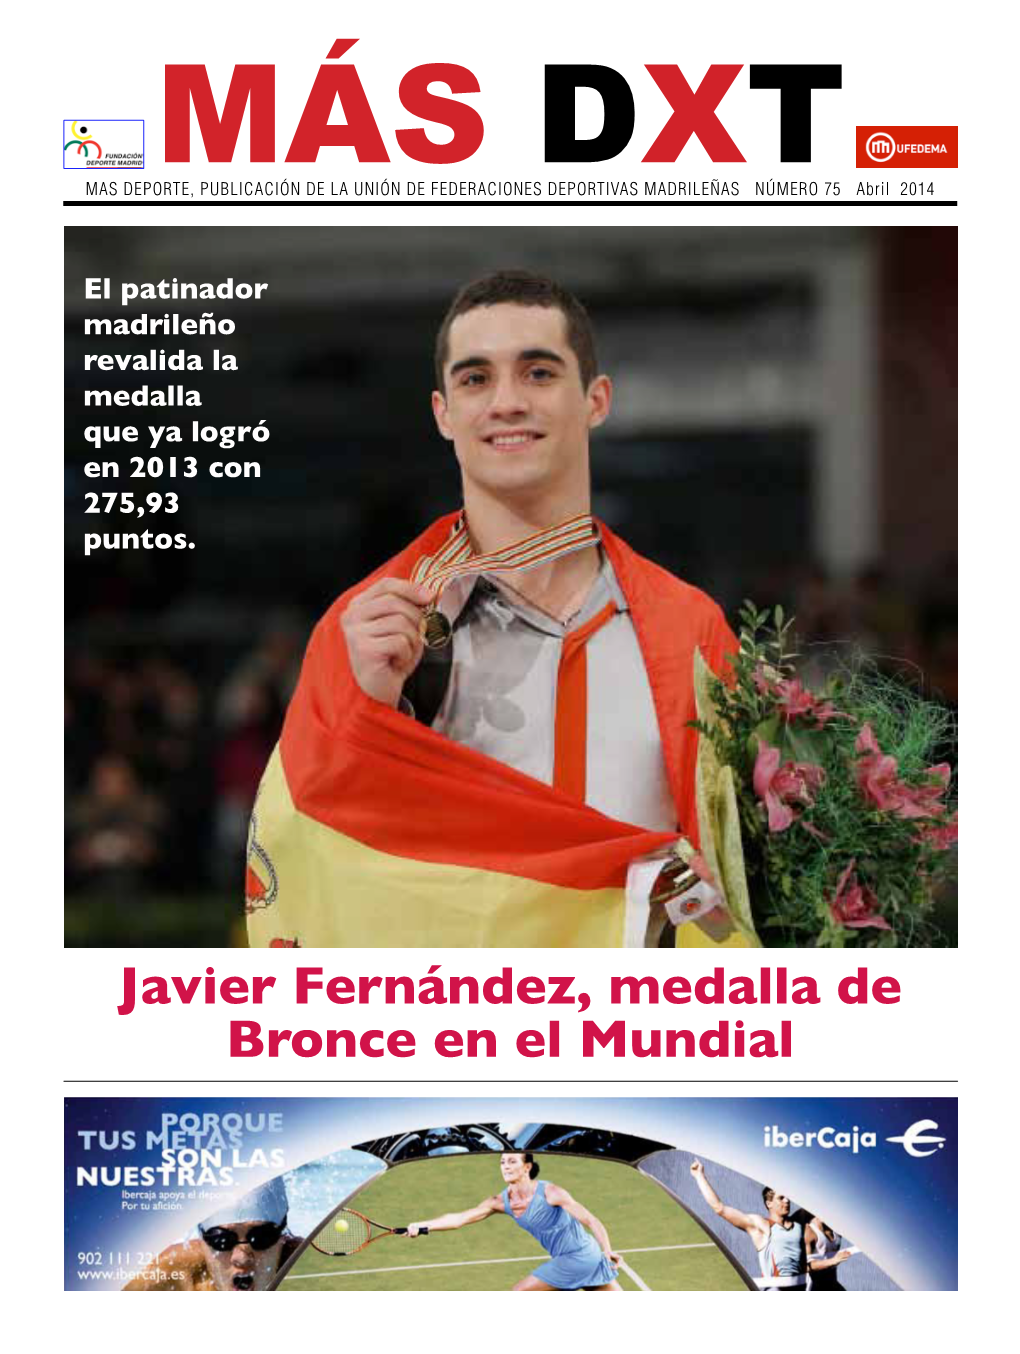 Javier Fernández, Medalla De Bronce En El Mundial 2 MAS Dxt MARZO 2014 El Polideportivo UFEDEMA